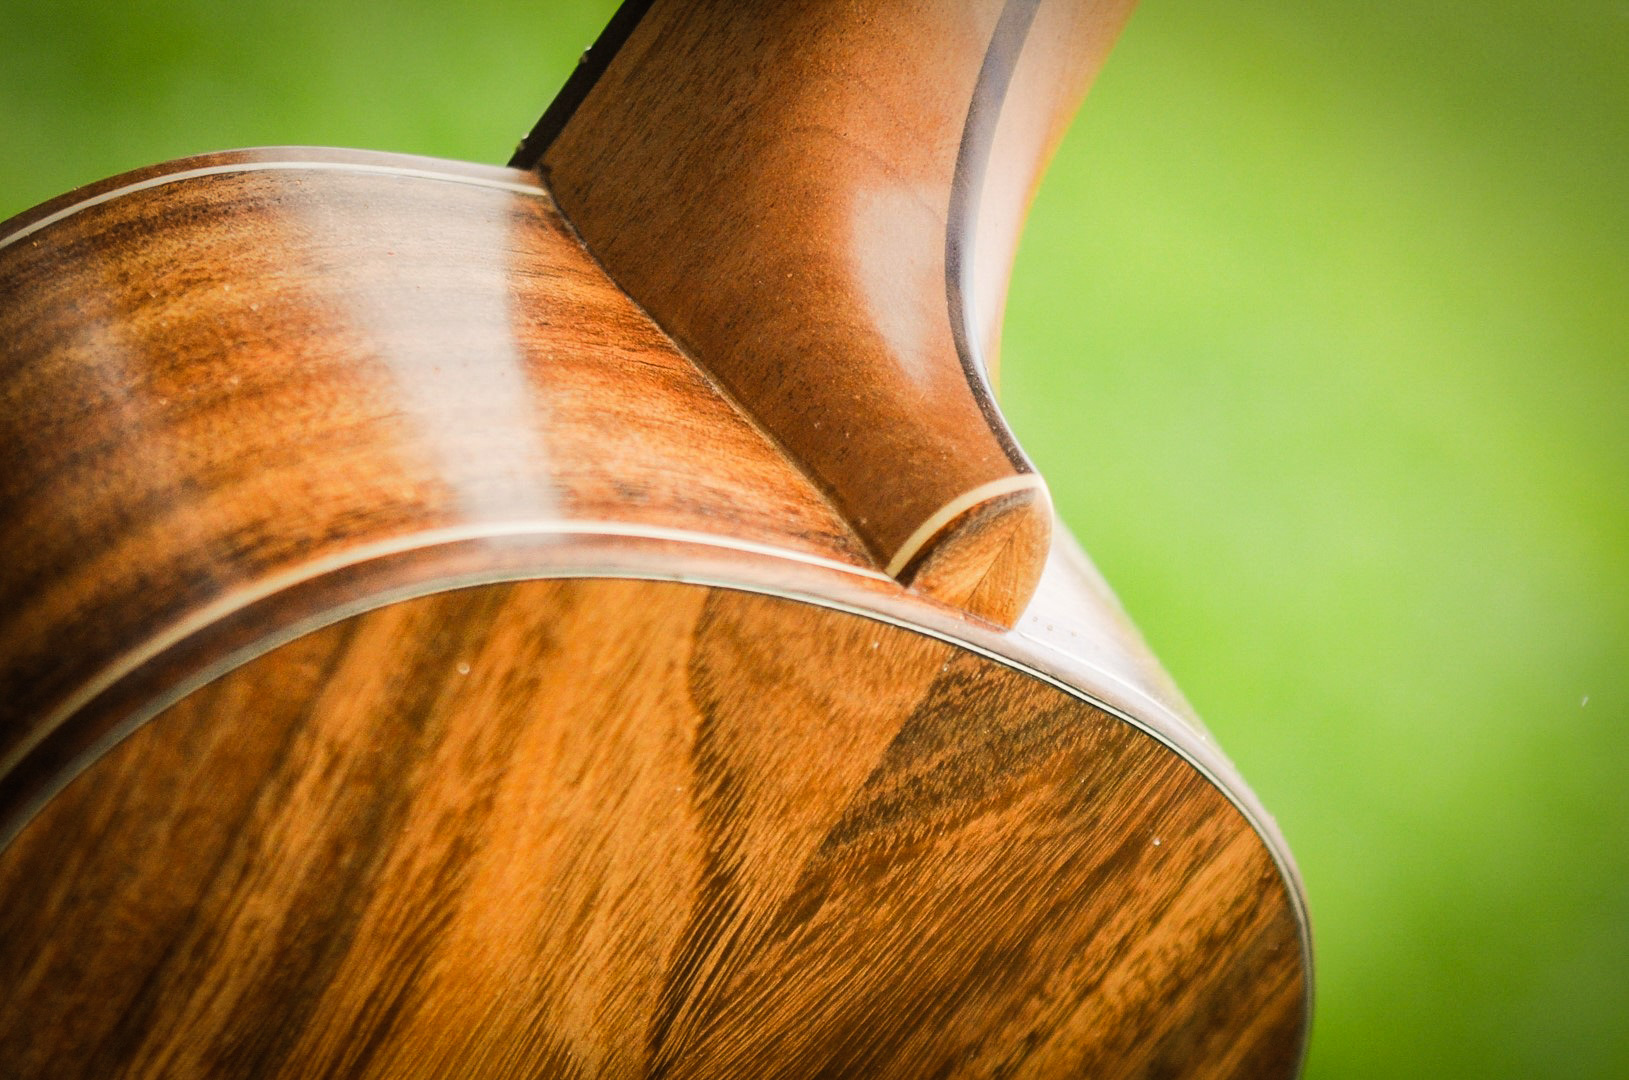 ukulele neck joint detail